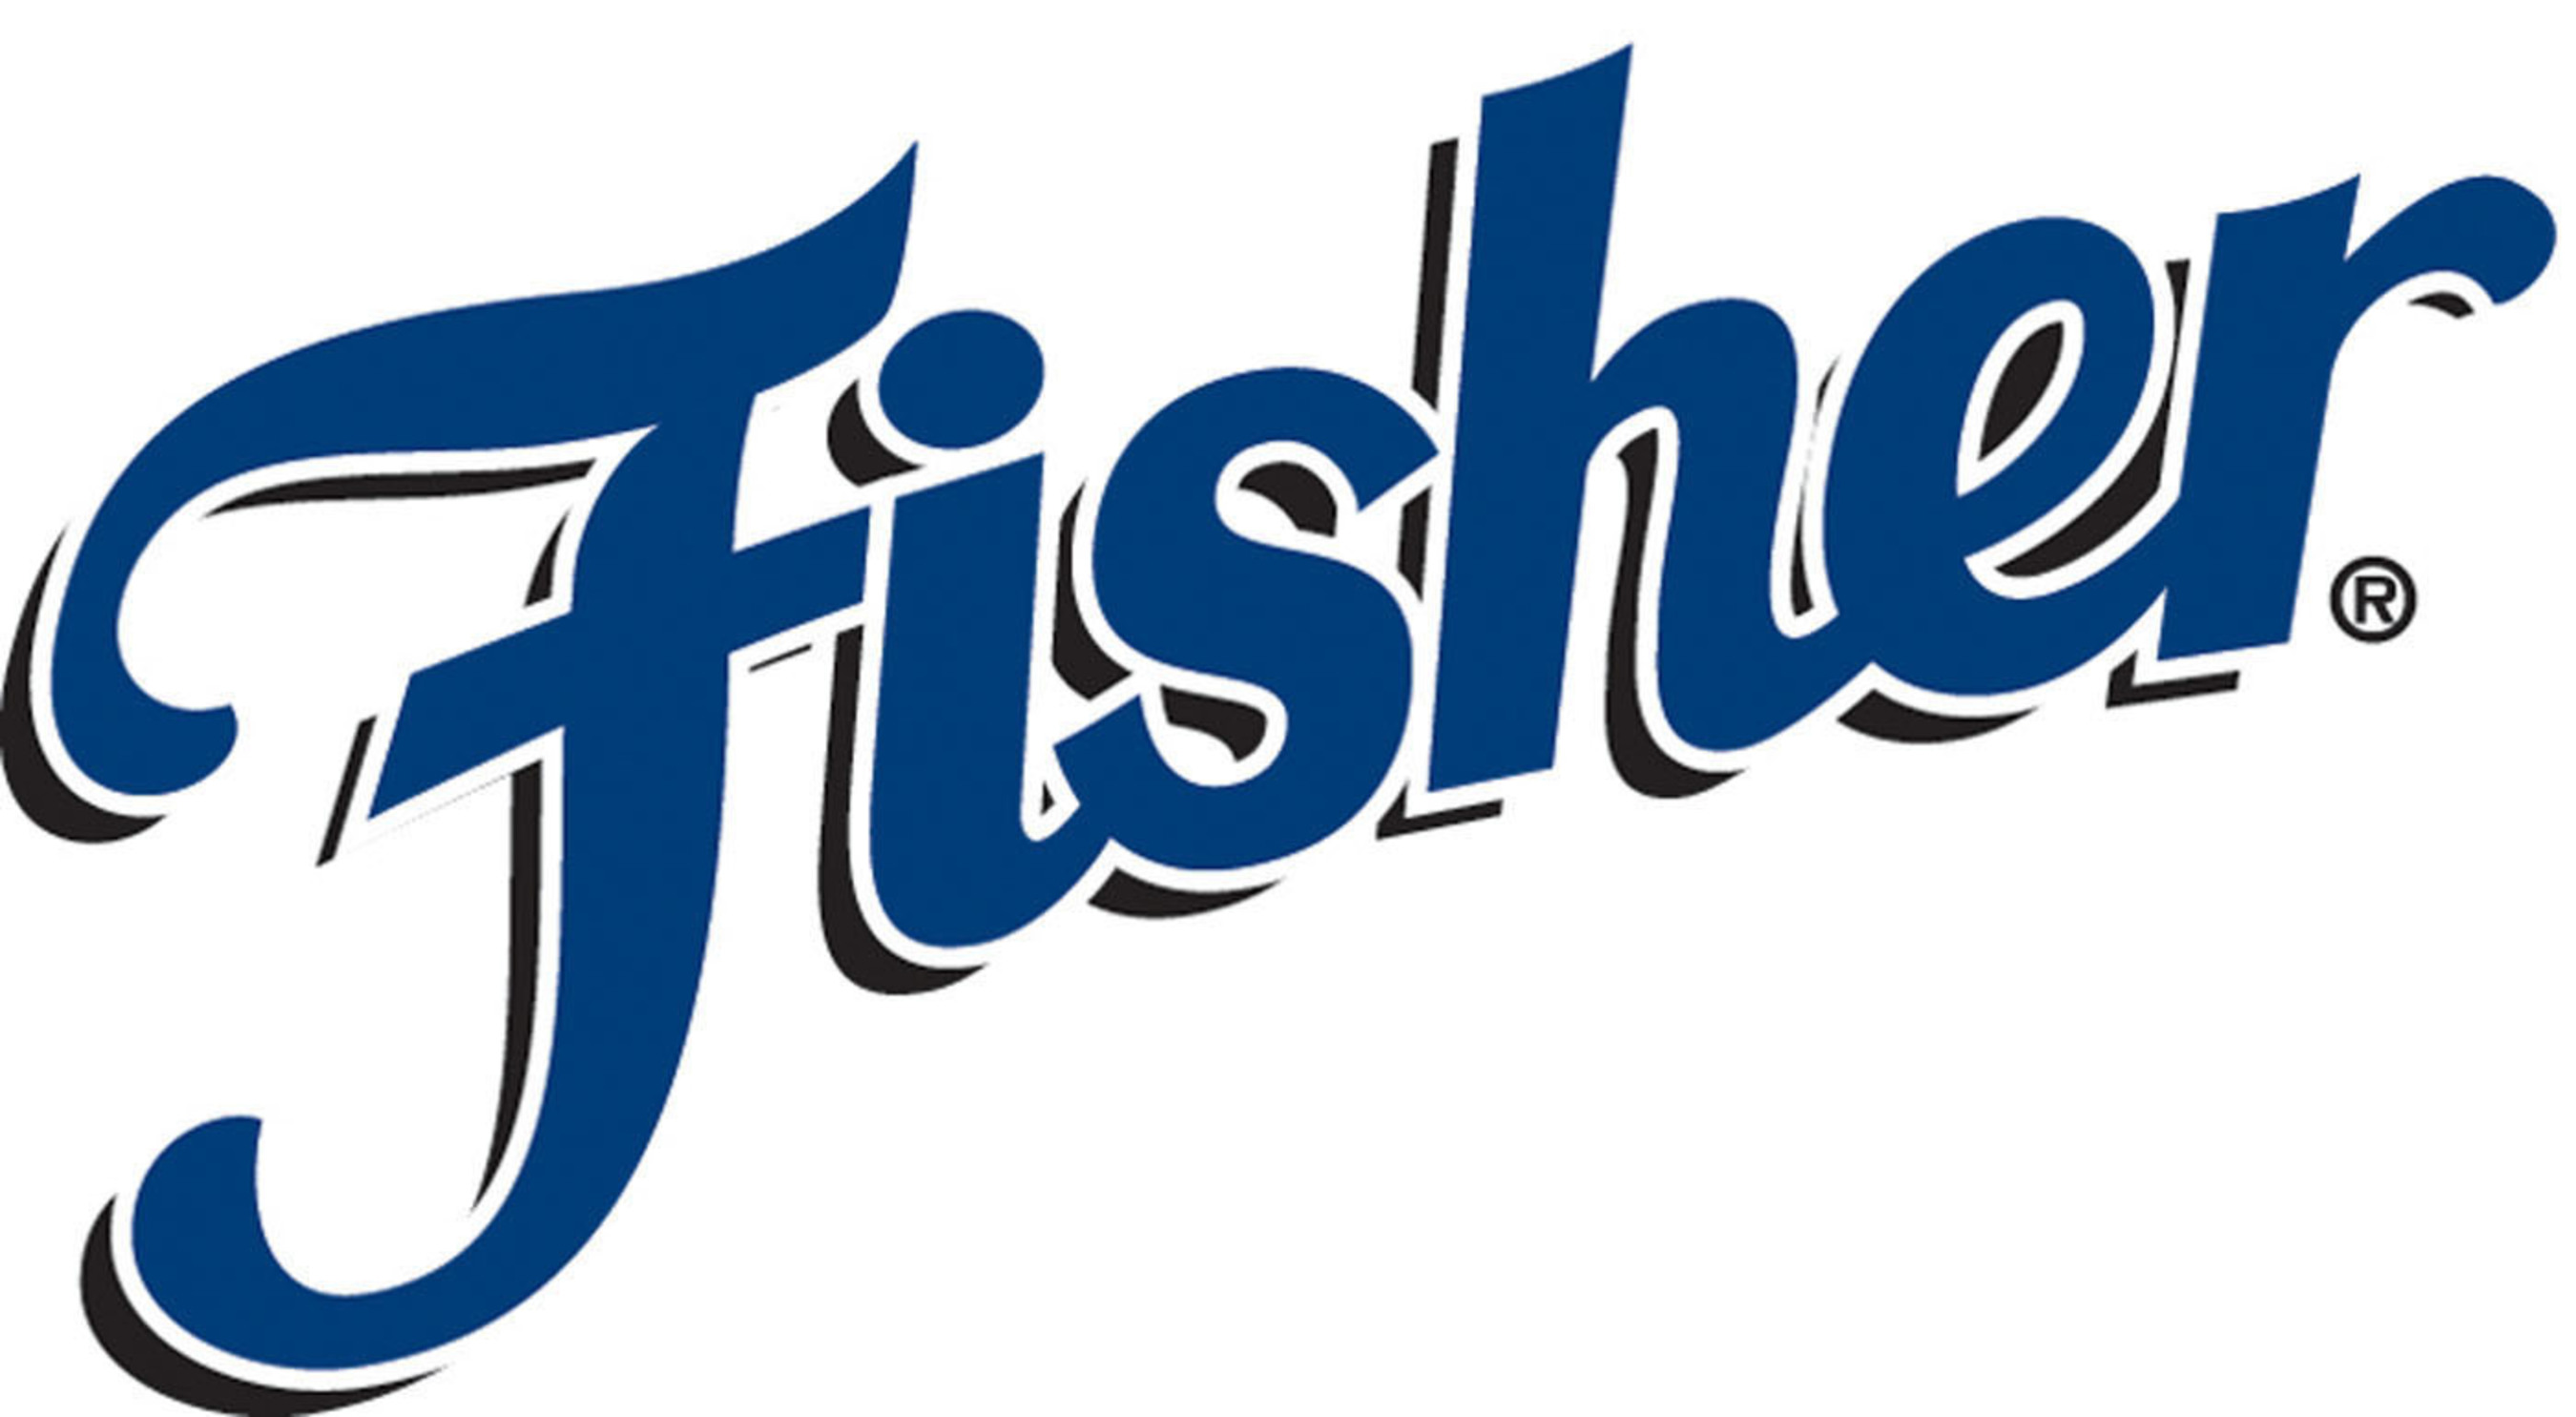 Fisher Nuts Logo. (PRNewsFoto/Fisher Nuts) (PRNewsFoto/FISHER NUTS)